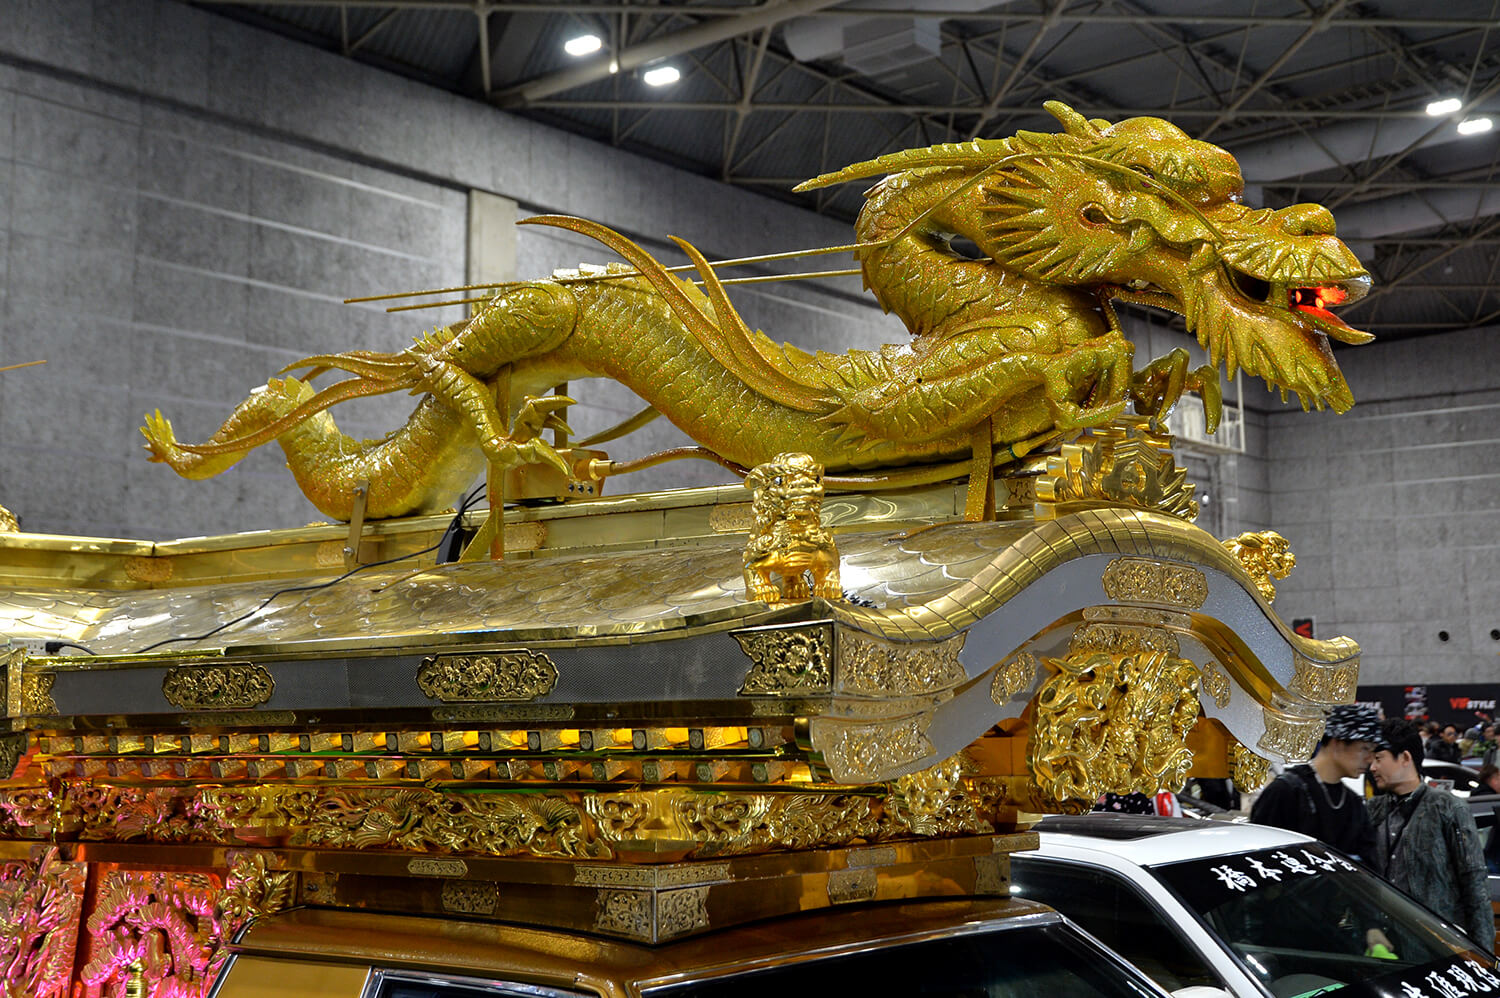 「84スペシャル」が展示した霊柩車の龍の装飾 〜 画像4